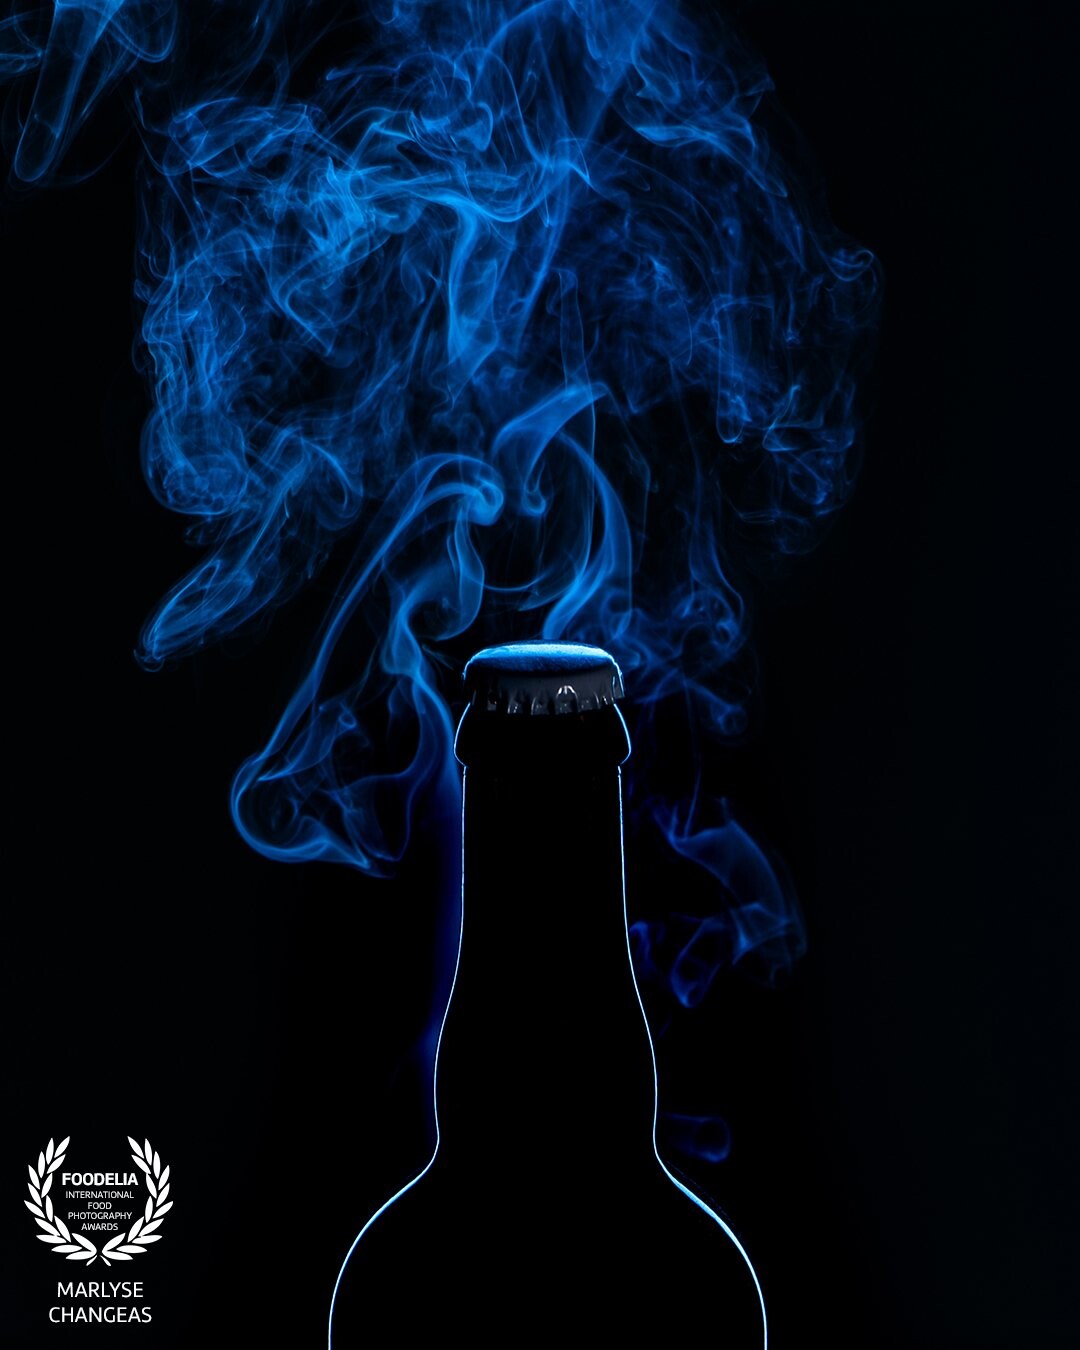 Bouteille de bière, mon intention était de jouer avec la lumière bleue et les mouvements de la fumée. la couleur amène du mystère dans l'image et met en valeur la silhouette.